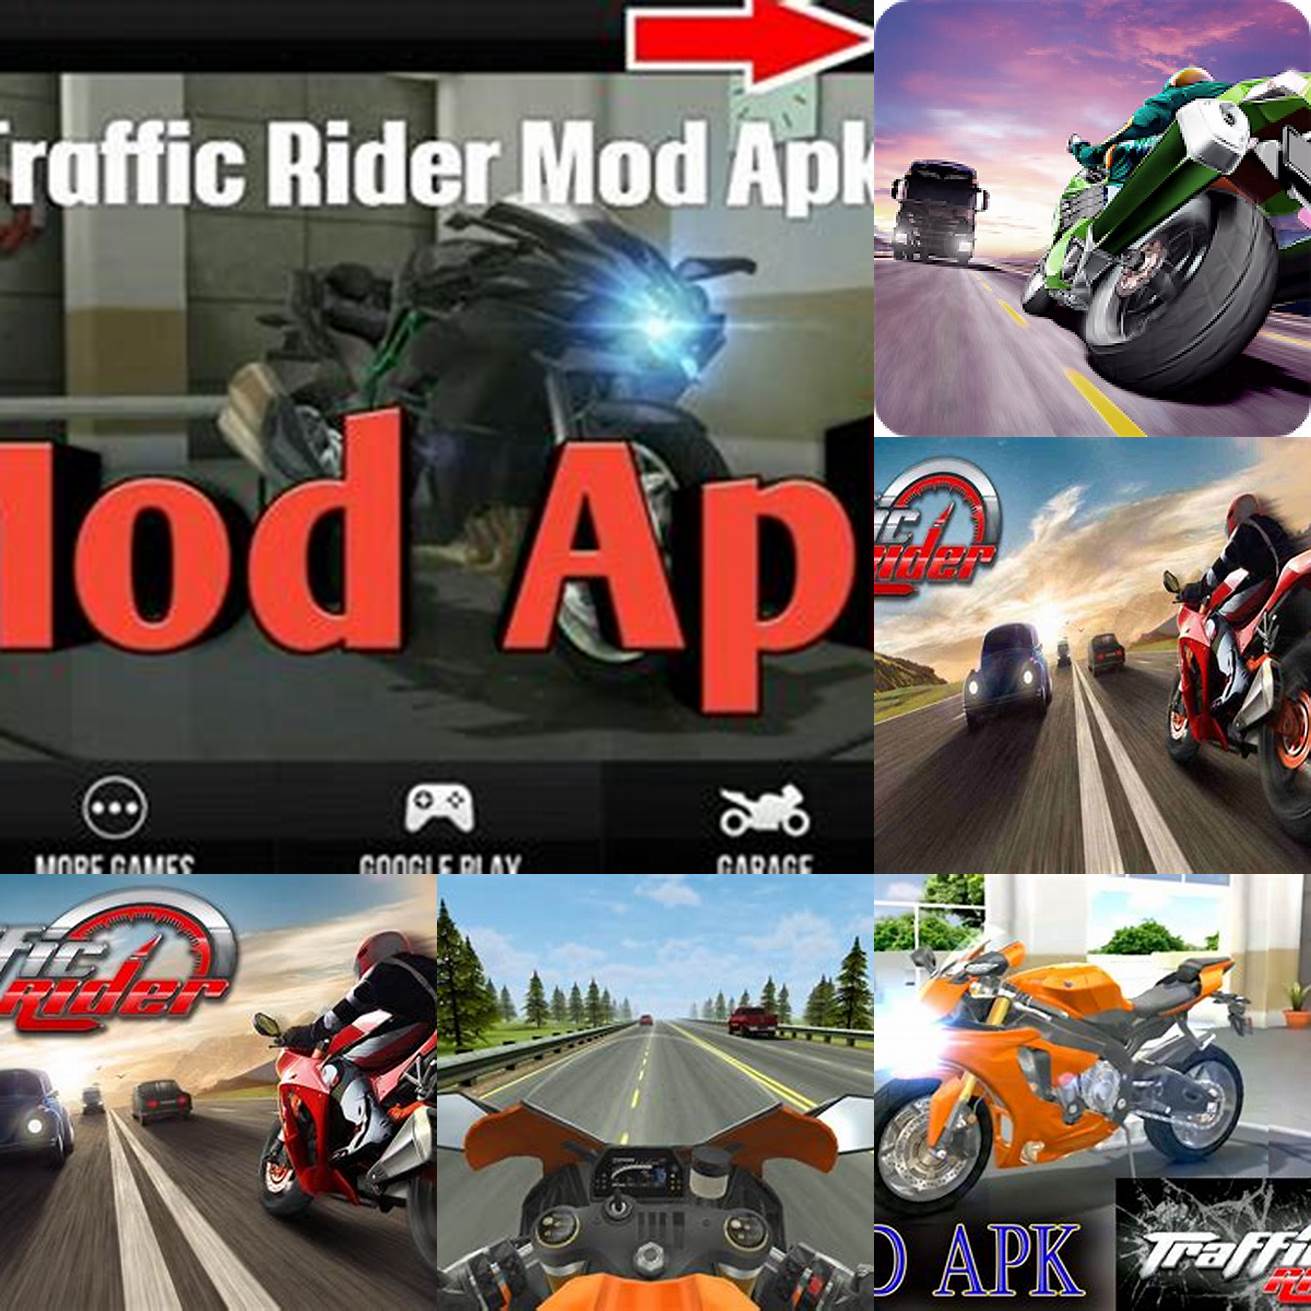 Pertama cari situs yang menyediakan link download APK Traffic Rider Mod Pastikan situs tersebut aman dan terpercaya